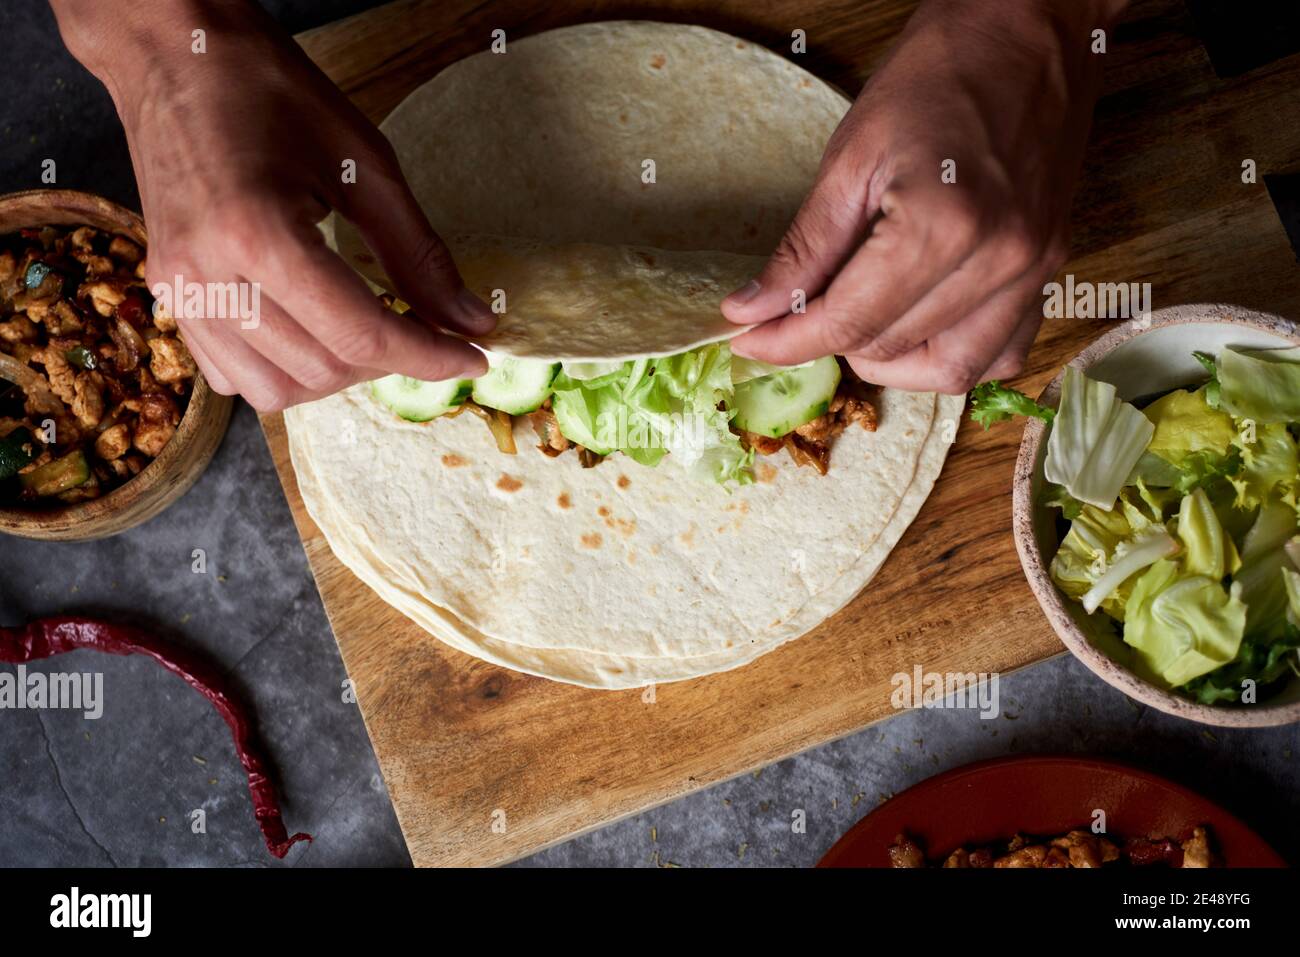 Blick aus dem hohen Winkel auf einen kaukasischen Mann, der ein Durum oder einen Burrito rollt, gefüllt mit Hühnerfleisch, das mit verschiedenen Gemüsesorten wie Zwiebeln oder roten und gr Stockfoto